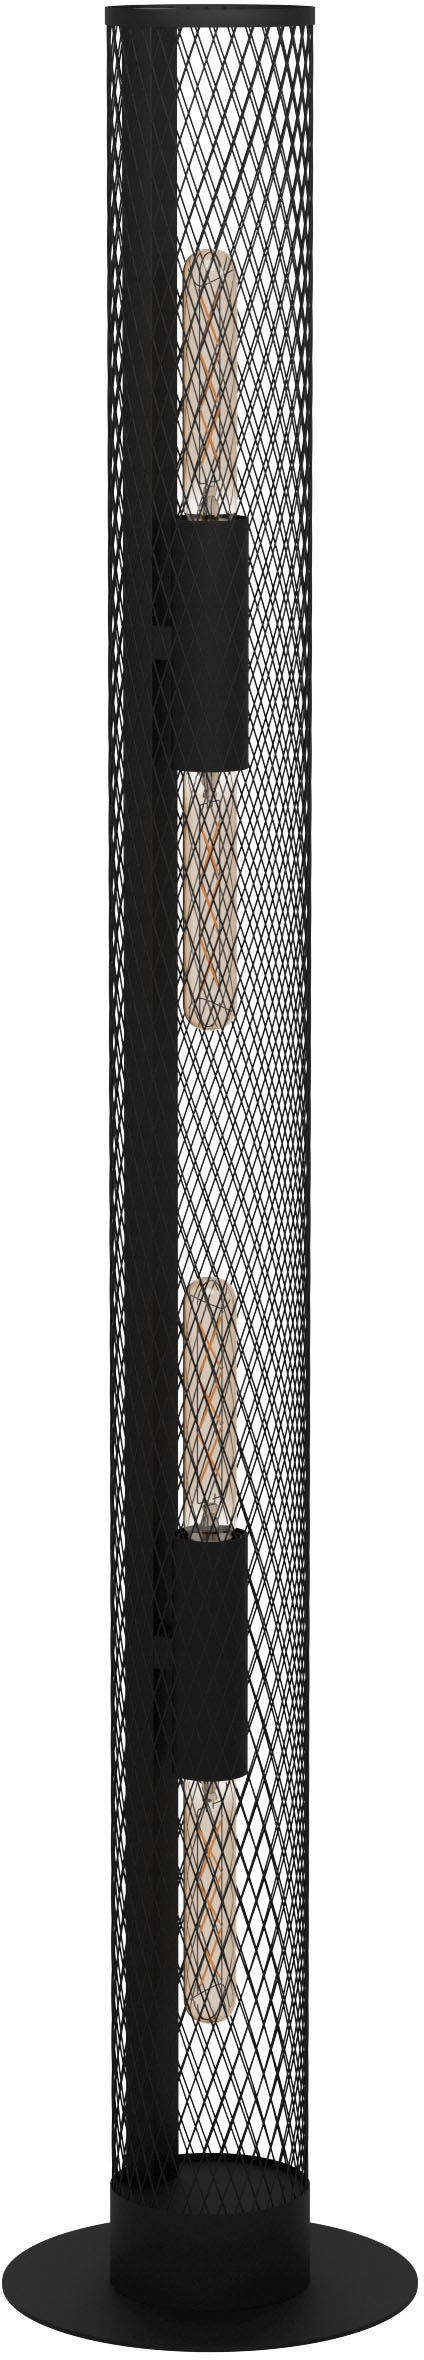 EGLO Stehlampe »REDCLIFFE«, Stehleuchte in schwarz aus Stahl - exkl. E27 - 4X40W